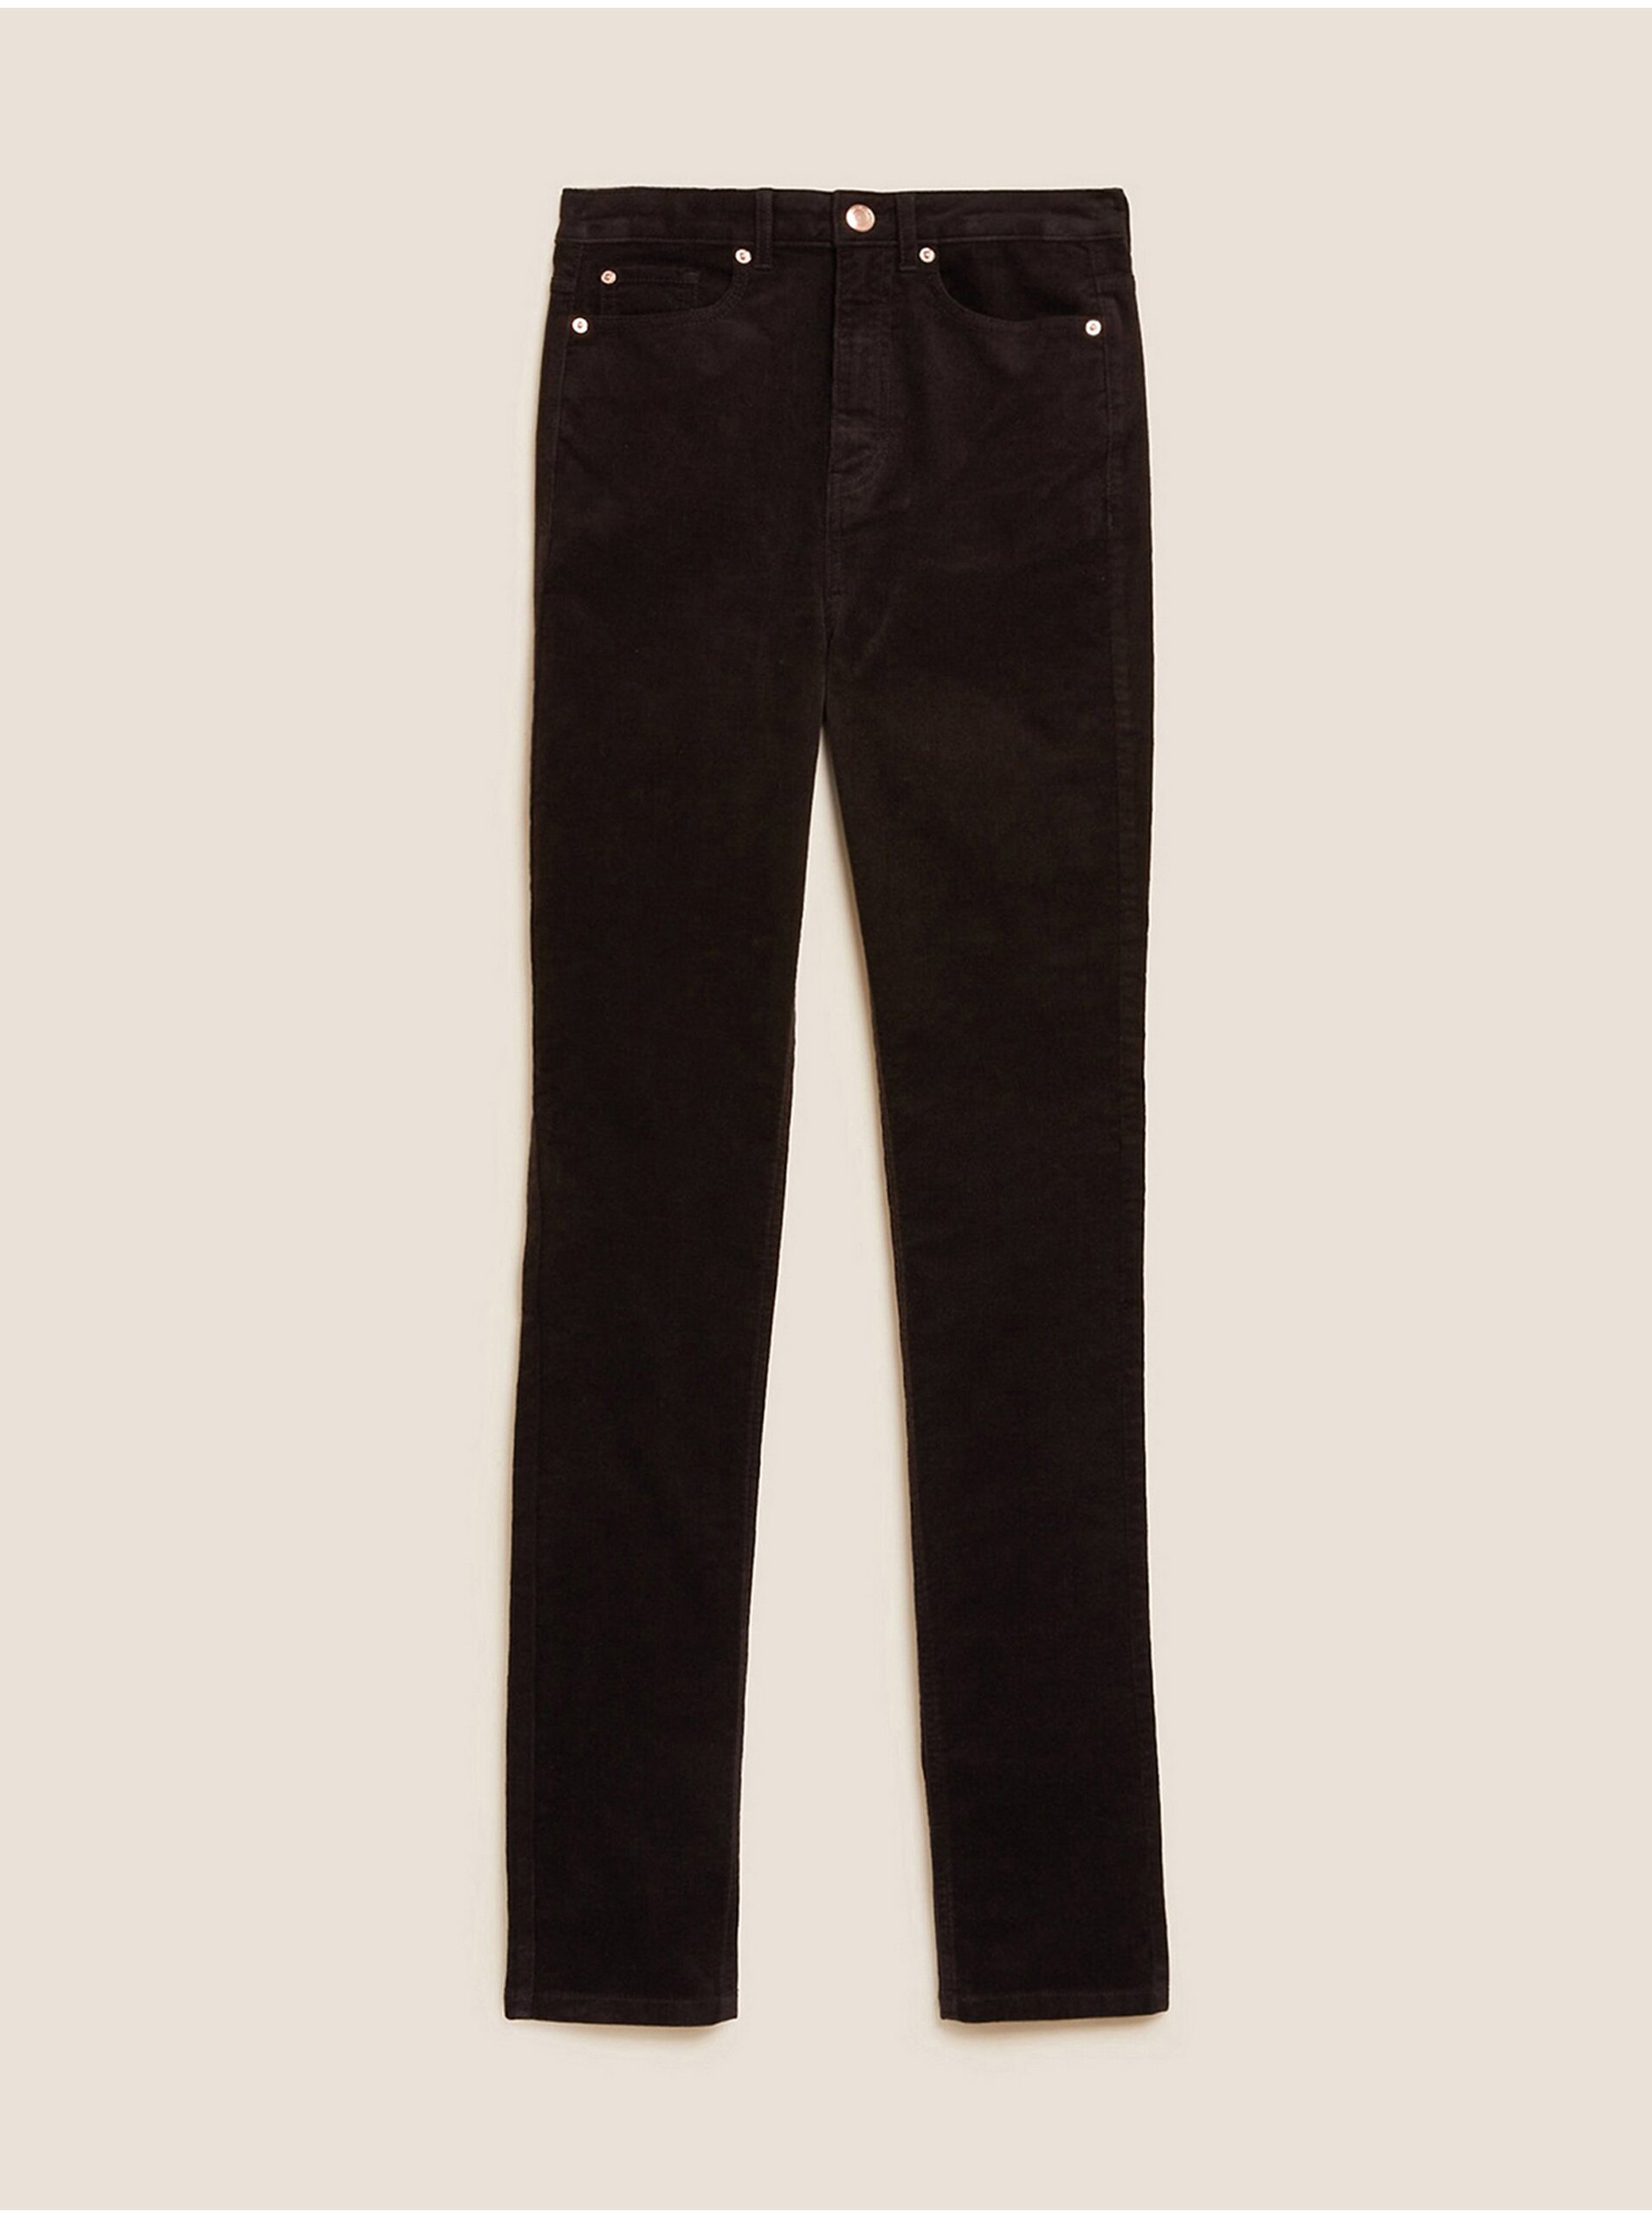 E-shop Tmavě hnědé dámské manšestrové kalhoty Marks & Spencer Sienna